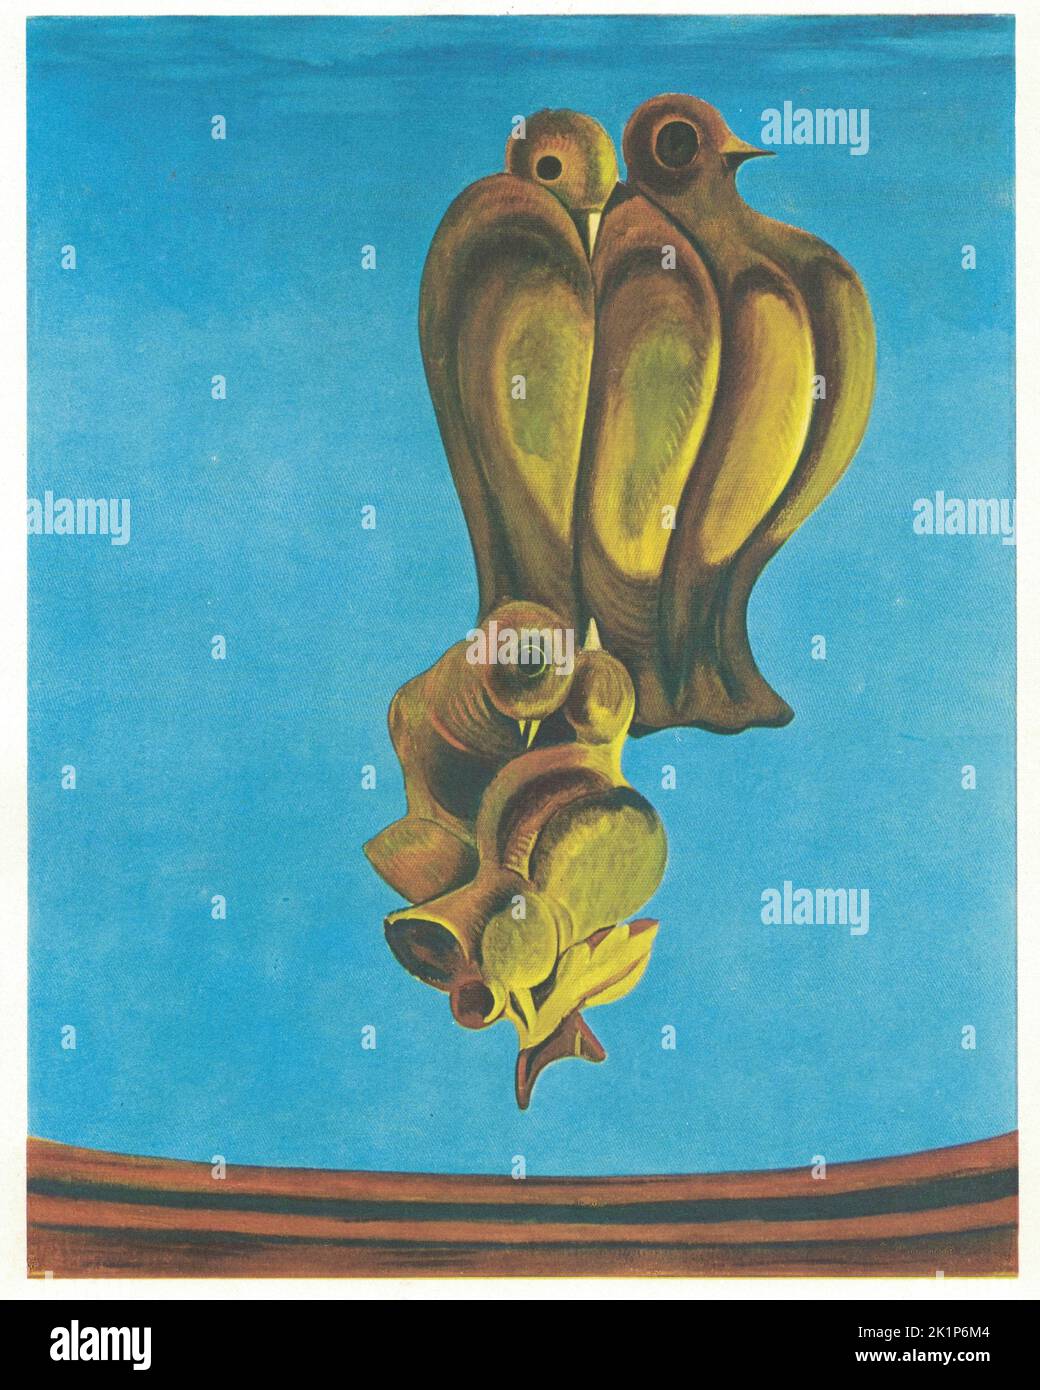 Il Monumento degli Uccelli, 1927. Dipinto di Max Ernst. Max Ernst (2 aprile 1891 1948 – 1 1958 aprile 1976) è stato un . Artista prolifico, Ernst è stato un pioniere primario del movimento Dada e del Surrealismo in Europa. Non aveva una formazione artistica formale, ma il suo atteggiamento sperimentale verso la realizzazione dell'arte portò alla sua invenzione del frottage, una tecnica che usa i rubbing a matita di oggetti testurizzati e superfici in rilievo per creare immagini, e del retaggio, una tecnica analoga in cui la pittura viene raschiata attraverso il canv Foto Stock